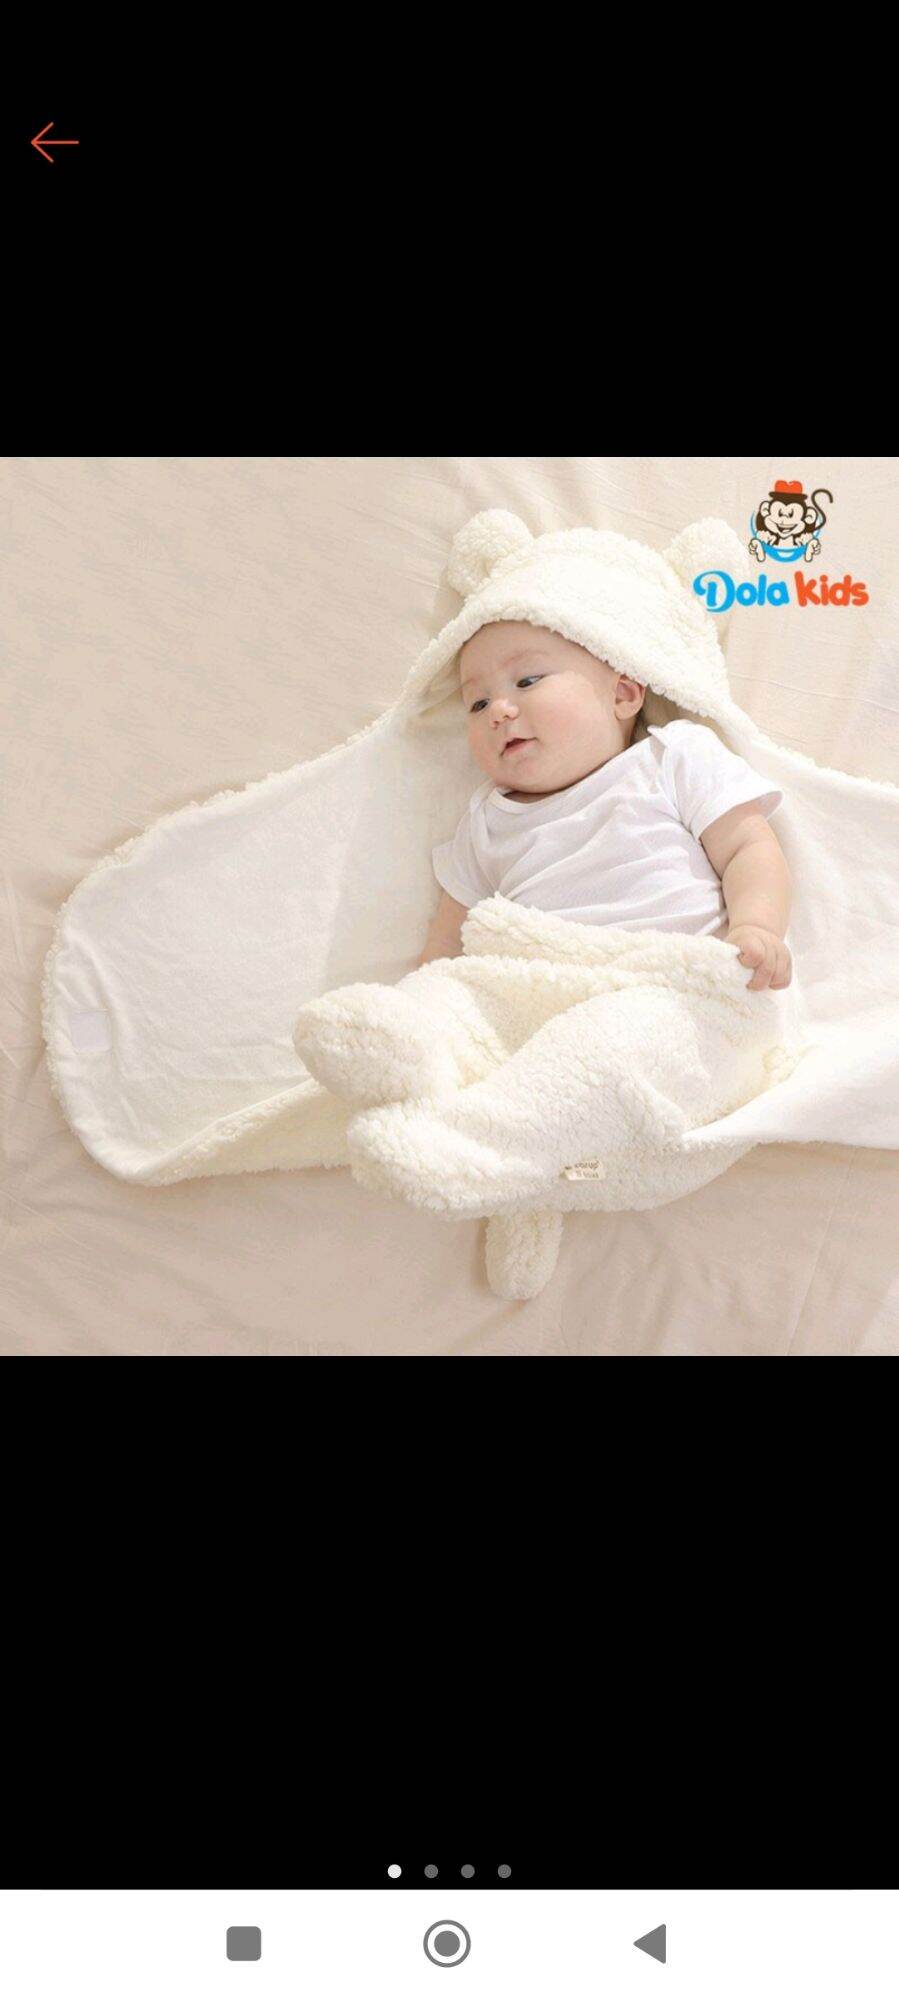 khăn ủ kén cho bé sơ sinh, quấn kén cho bé dễ ngủ